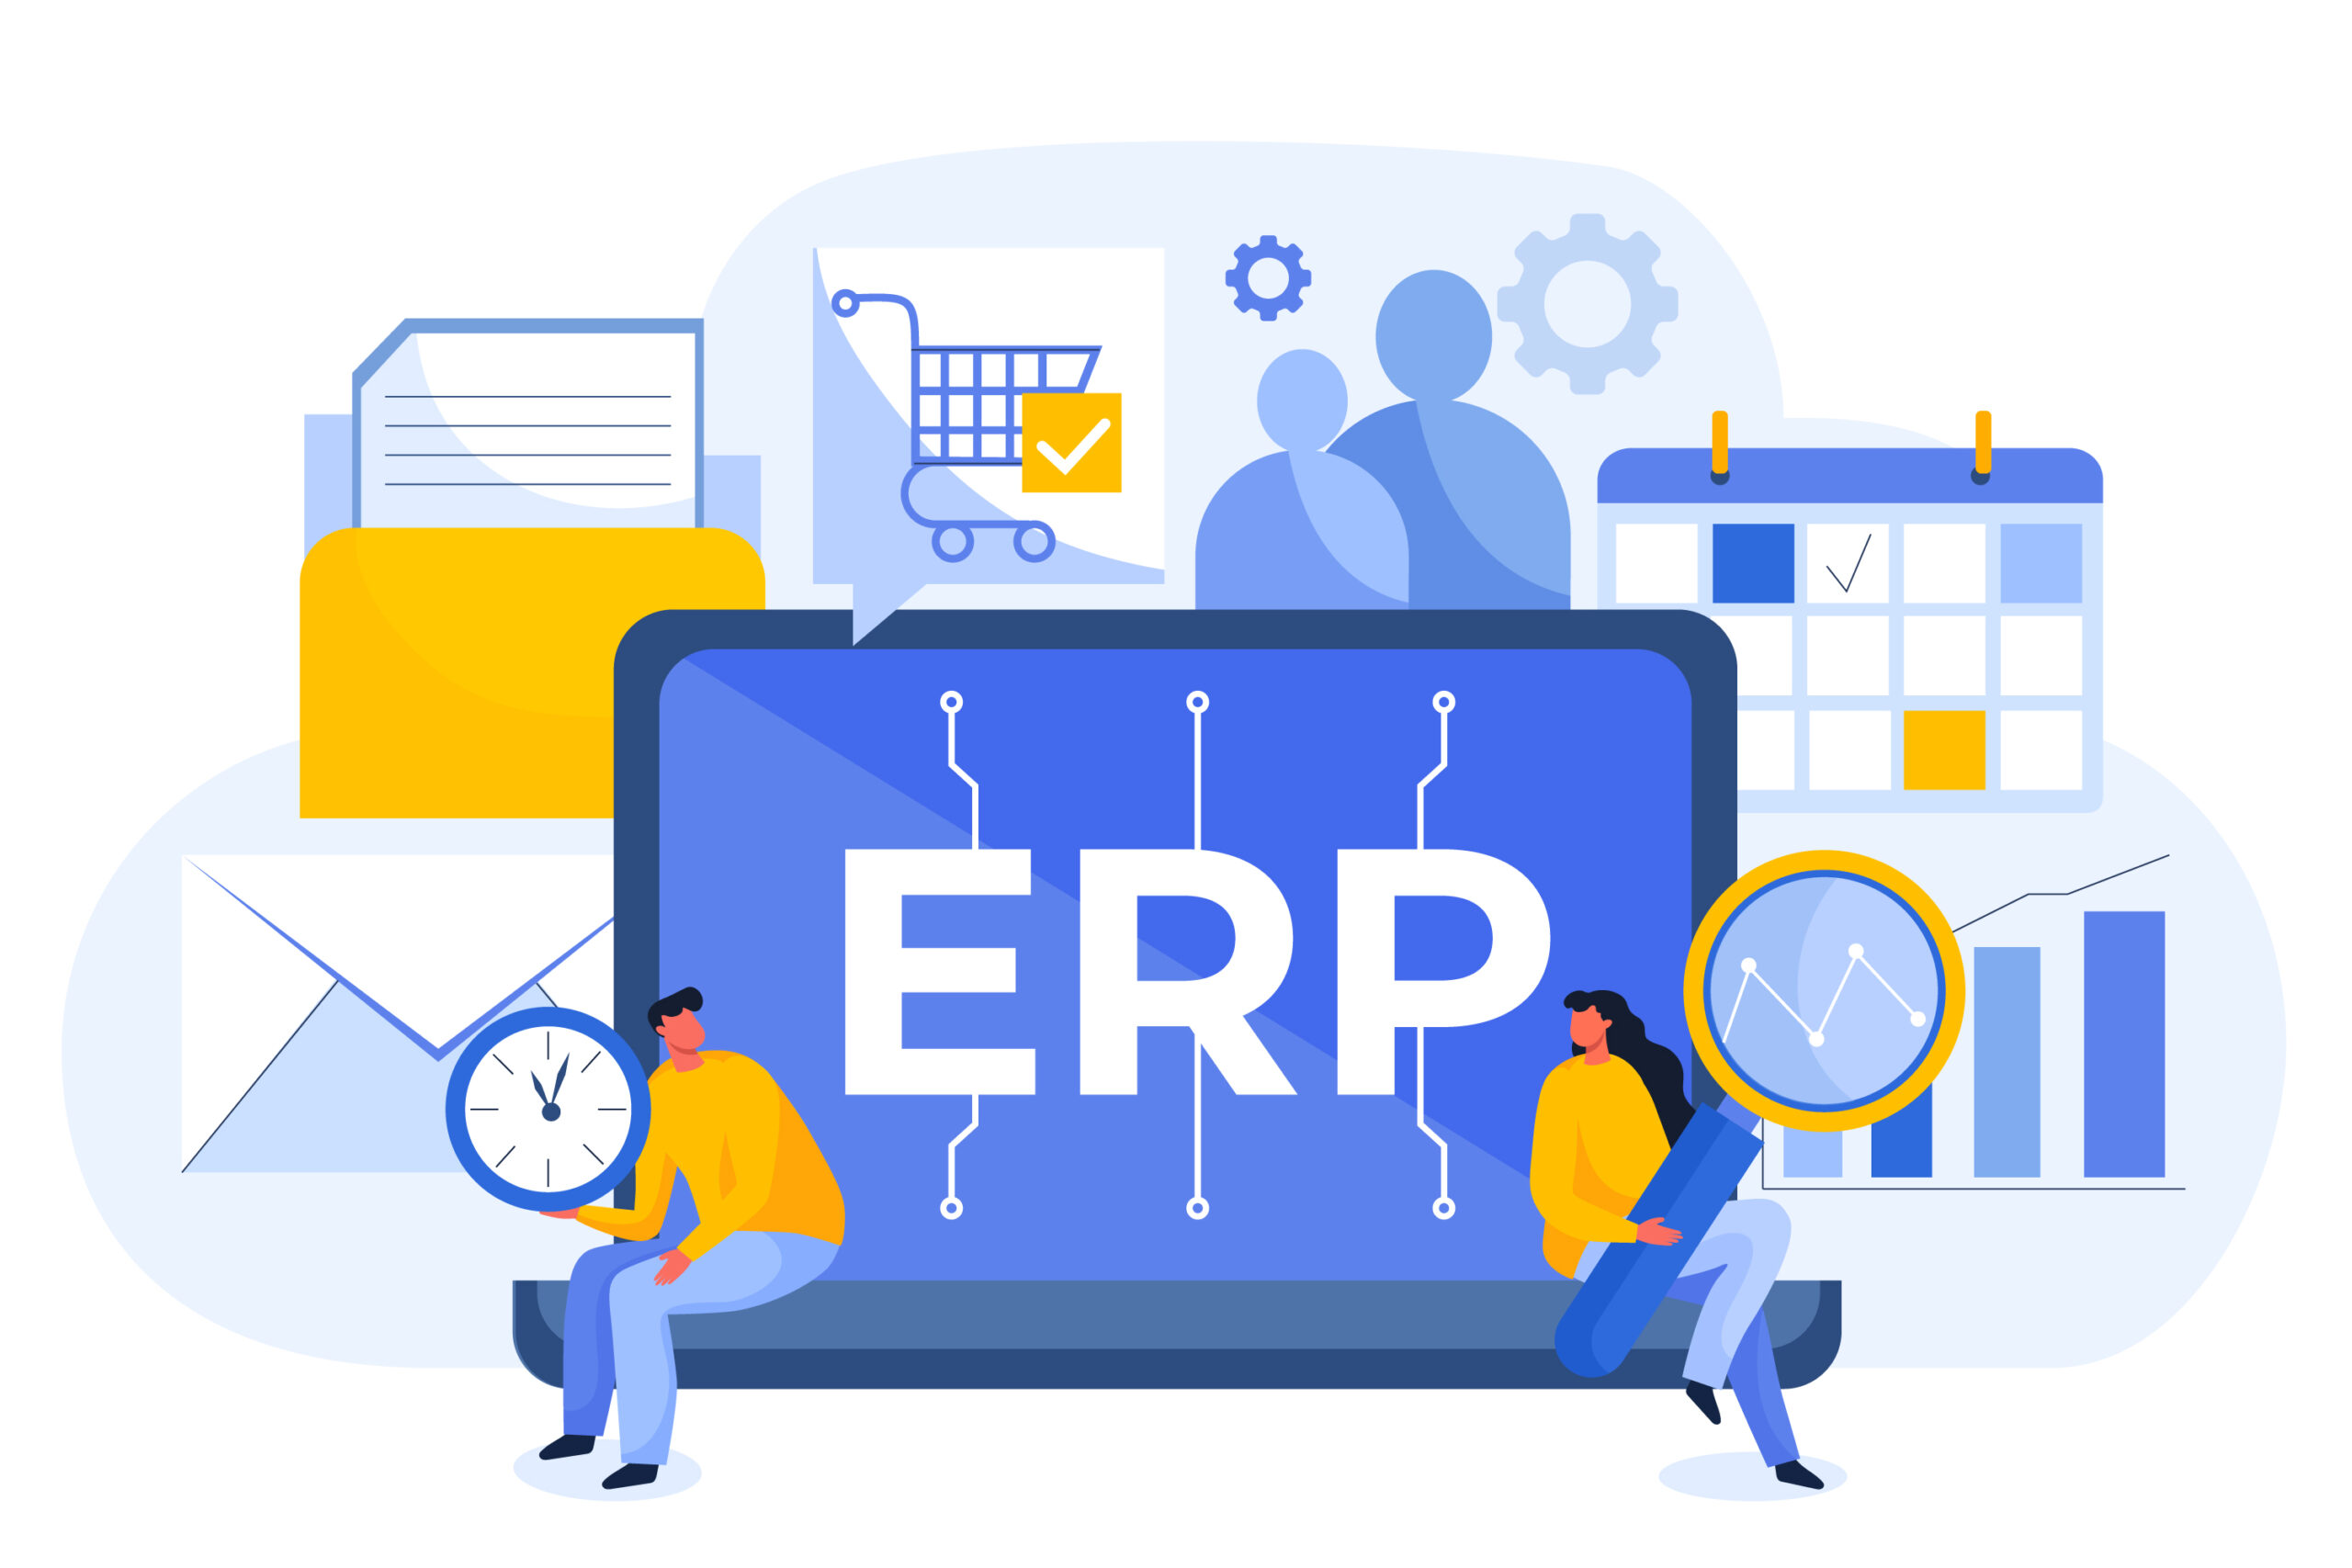 نرم افزار ERP چیست؟